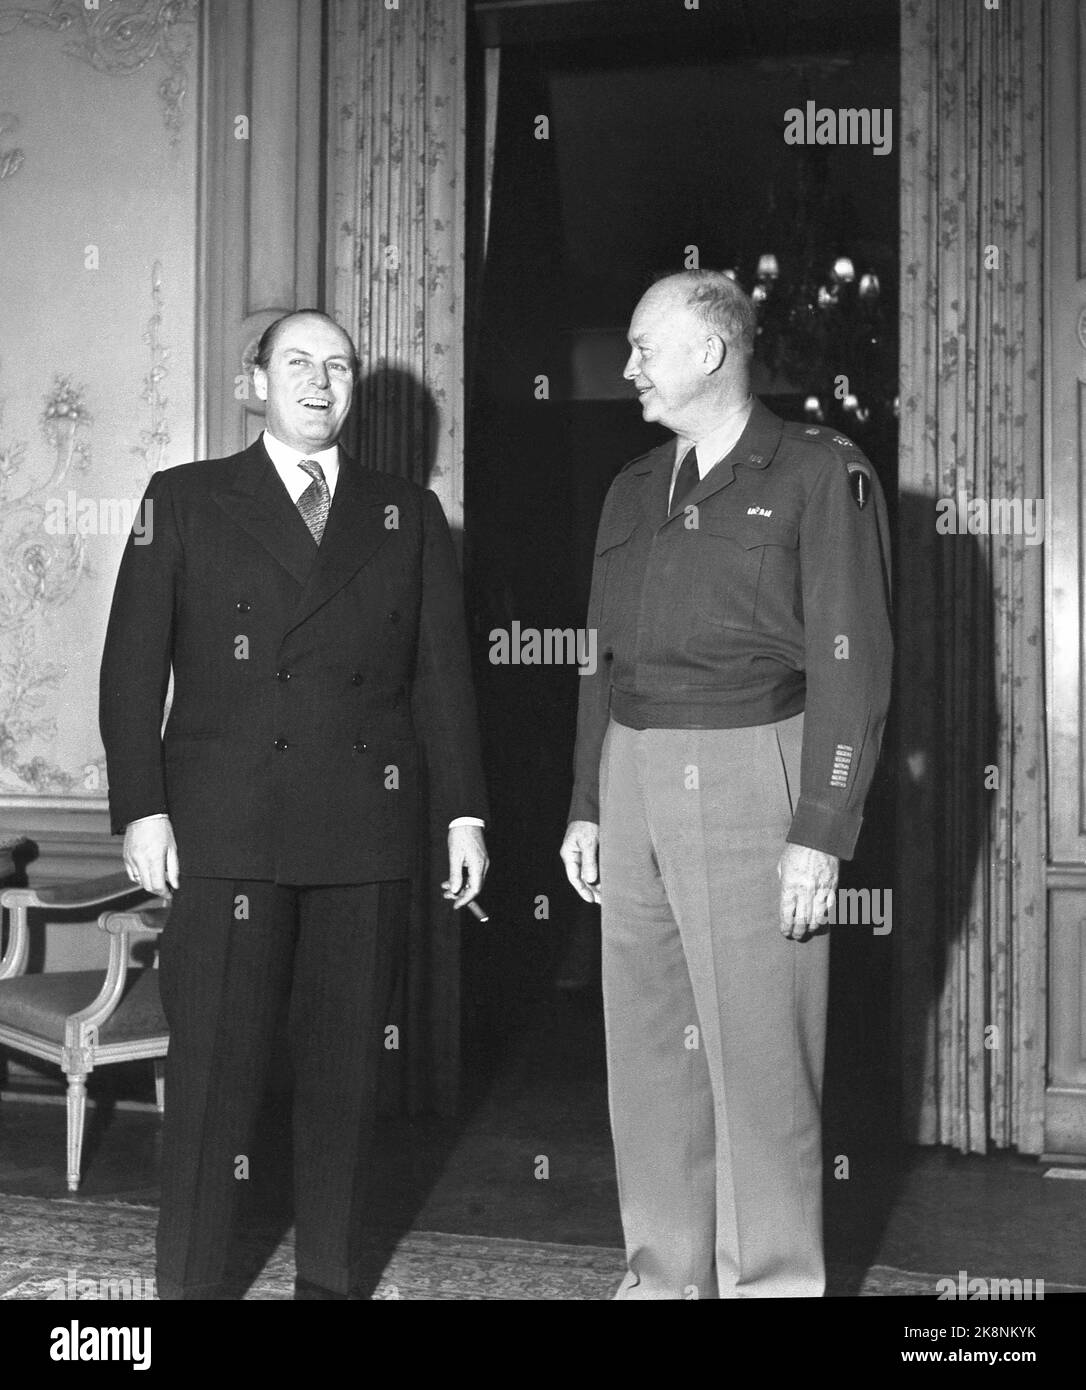 Oslo 1951: Kronprinz Olav (TV) in einem netten Passagier mit dem amerikanischen General und späteren Präsidenten Dwight D. Eisenhower. Eisenhower war im Zusammenhang mit der Marshallhilfe in Norwegen. Foto: NTB Archive / NTB Stockfoto